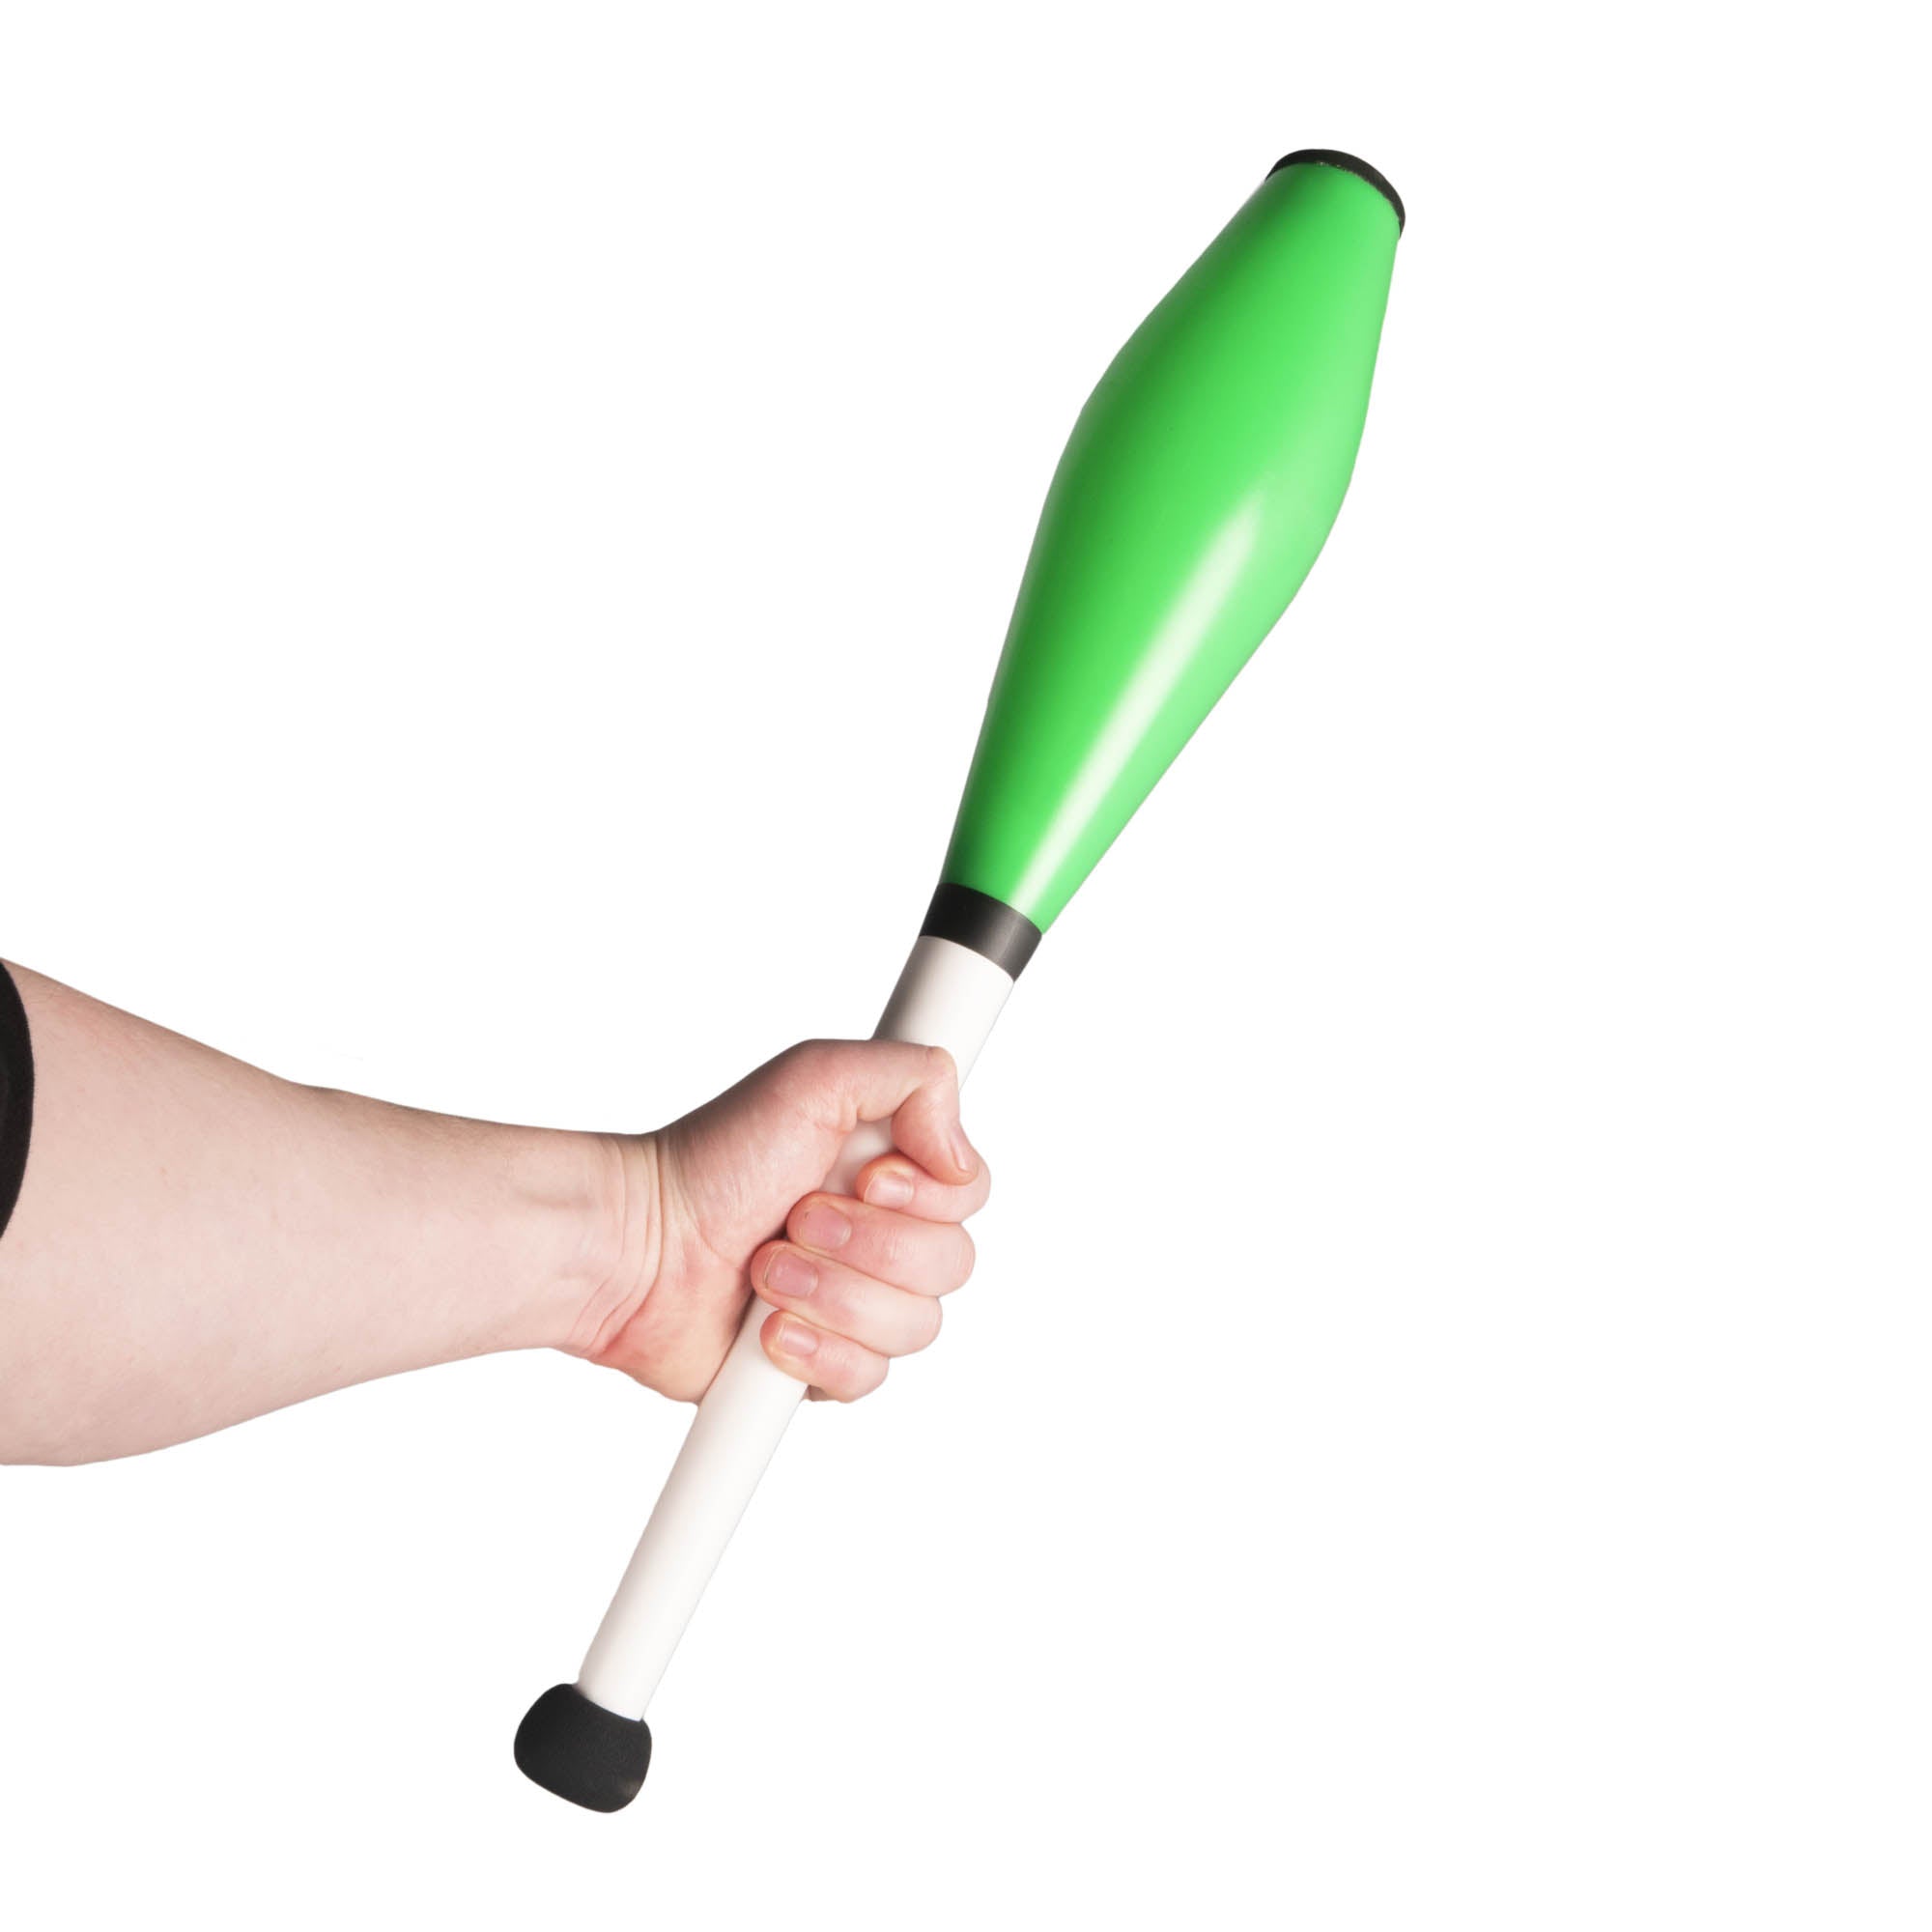 Green Henry's loop juggling club in hand